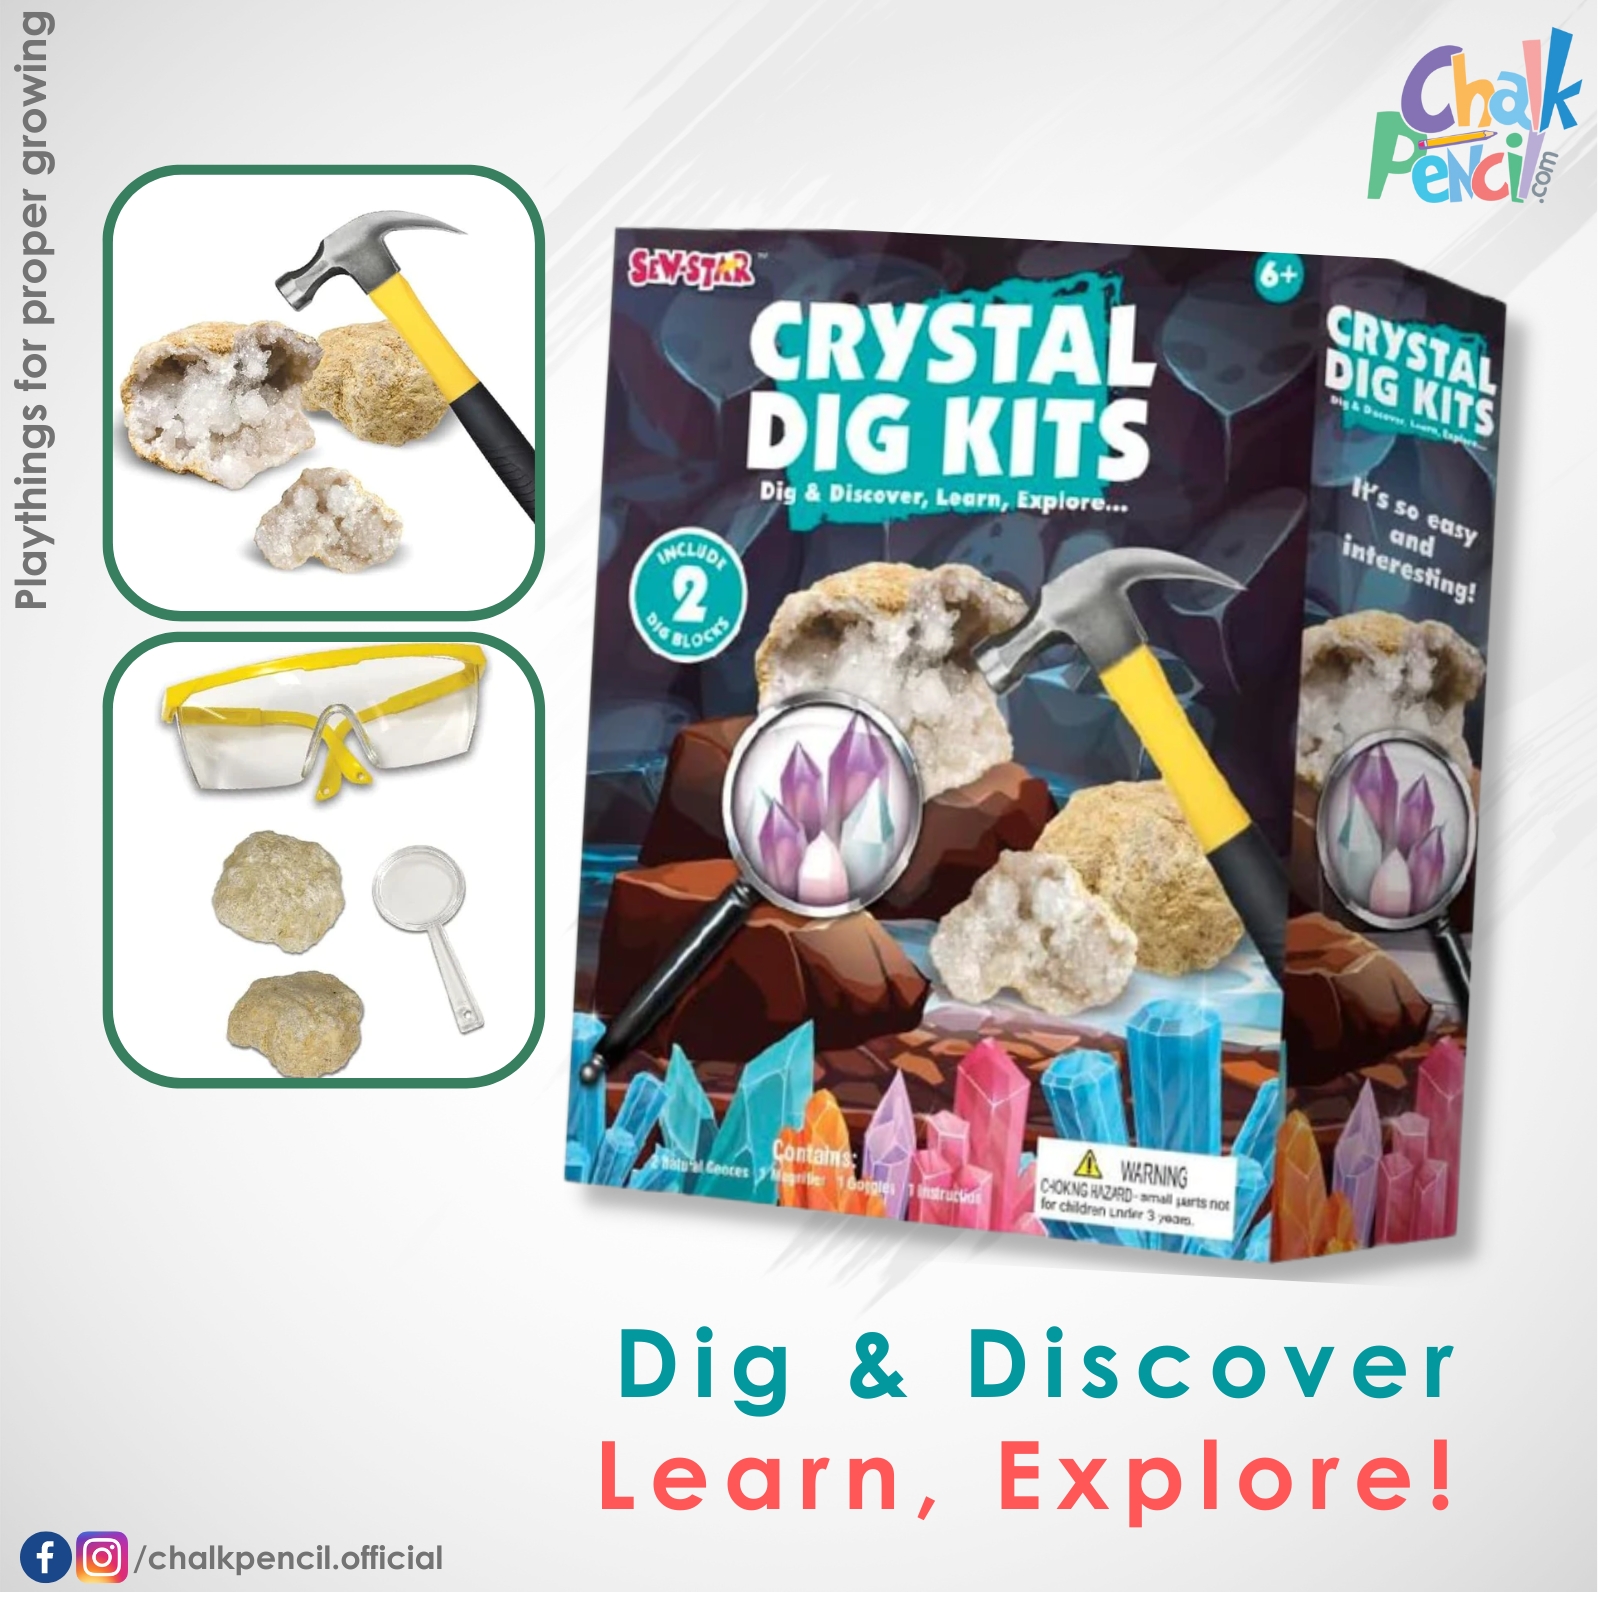 Crystal Dig Kits